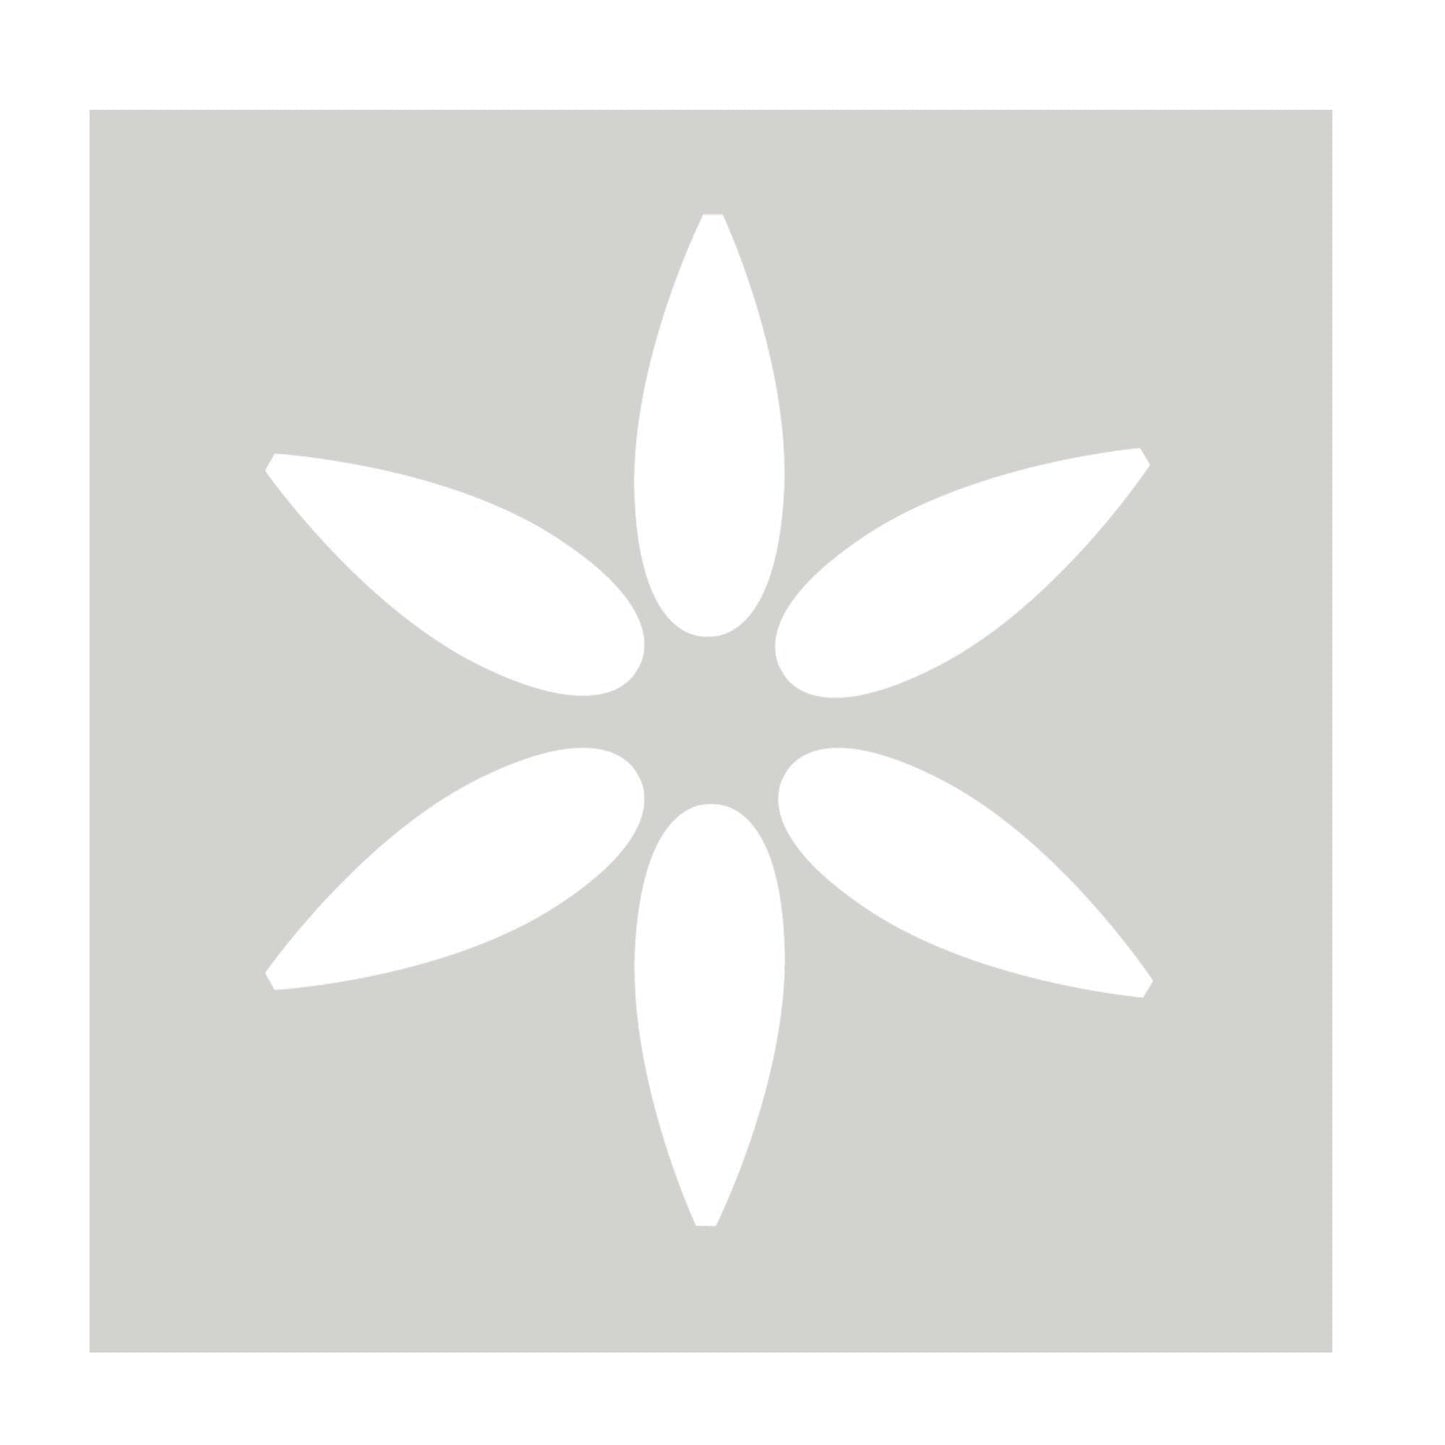 Betonplatten Schablone - Moderne Blumenschablone für Terrassen-Platten - Fliesen Schablone